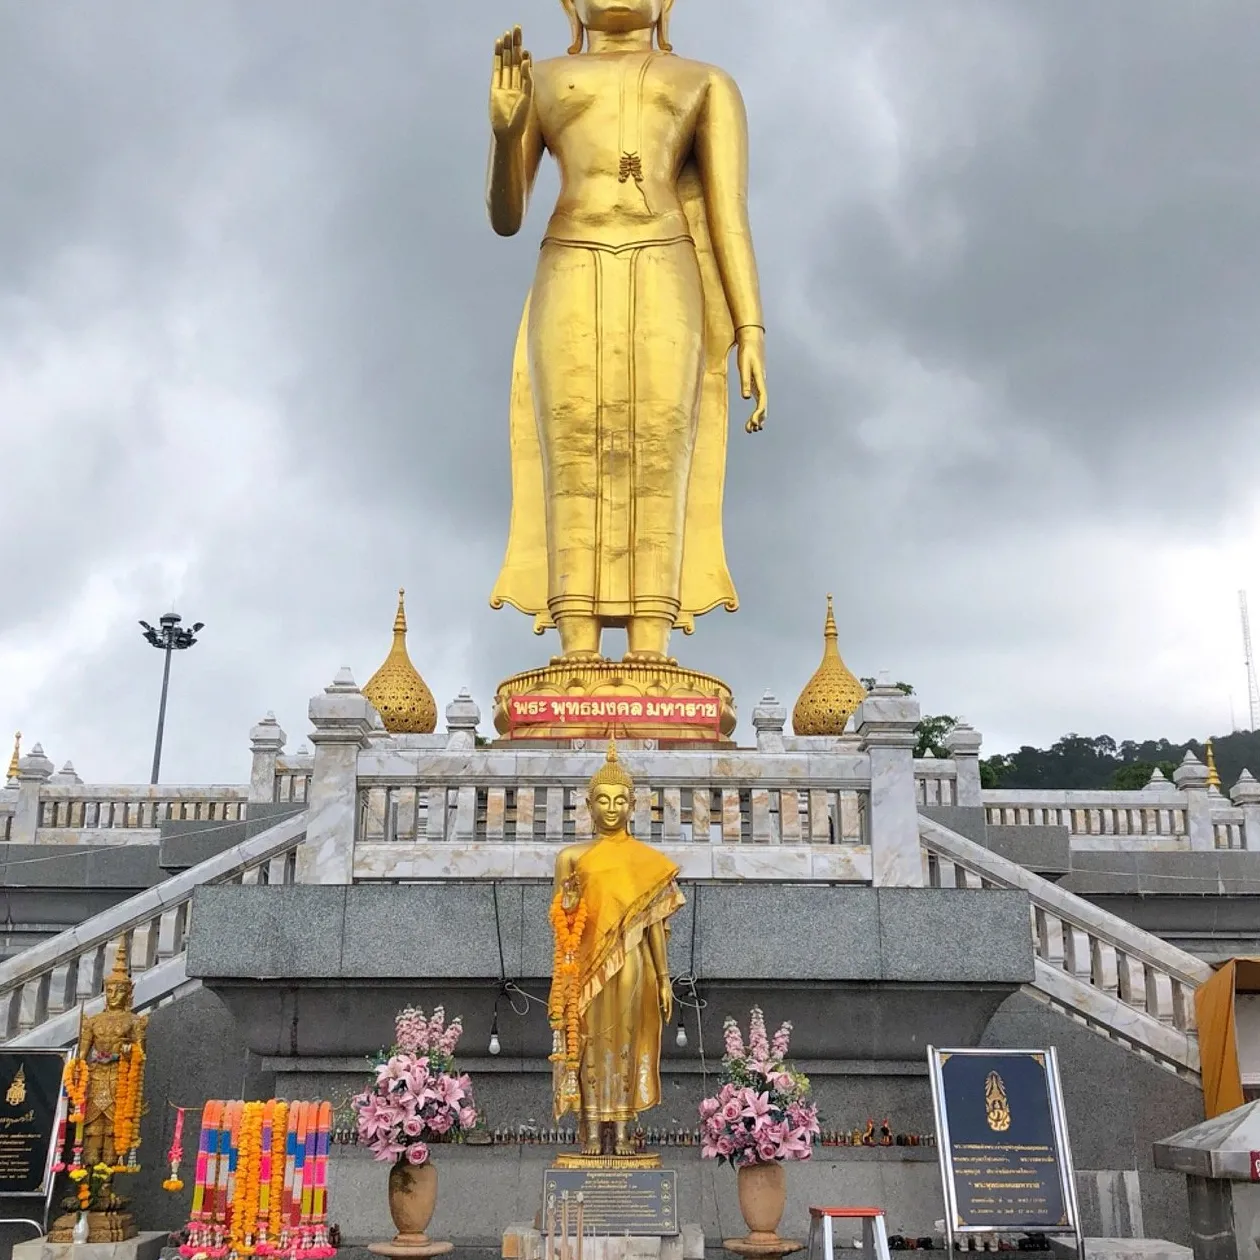 Buda reclinado de Hat Yai